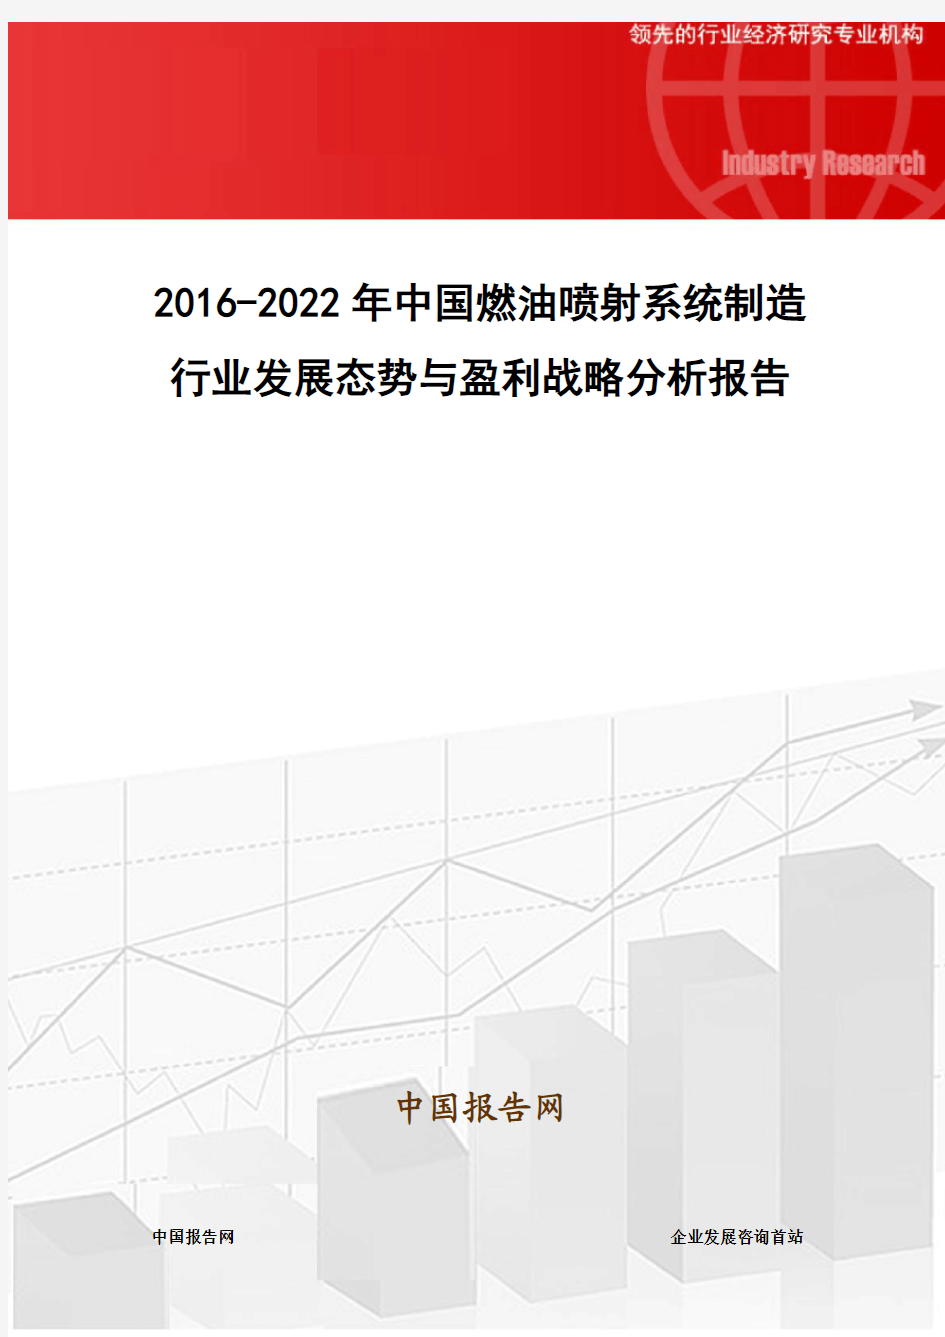 2016-2022年中国燃油喷射系统制造行业发展态势与盈利战略分析报告